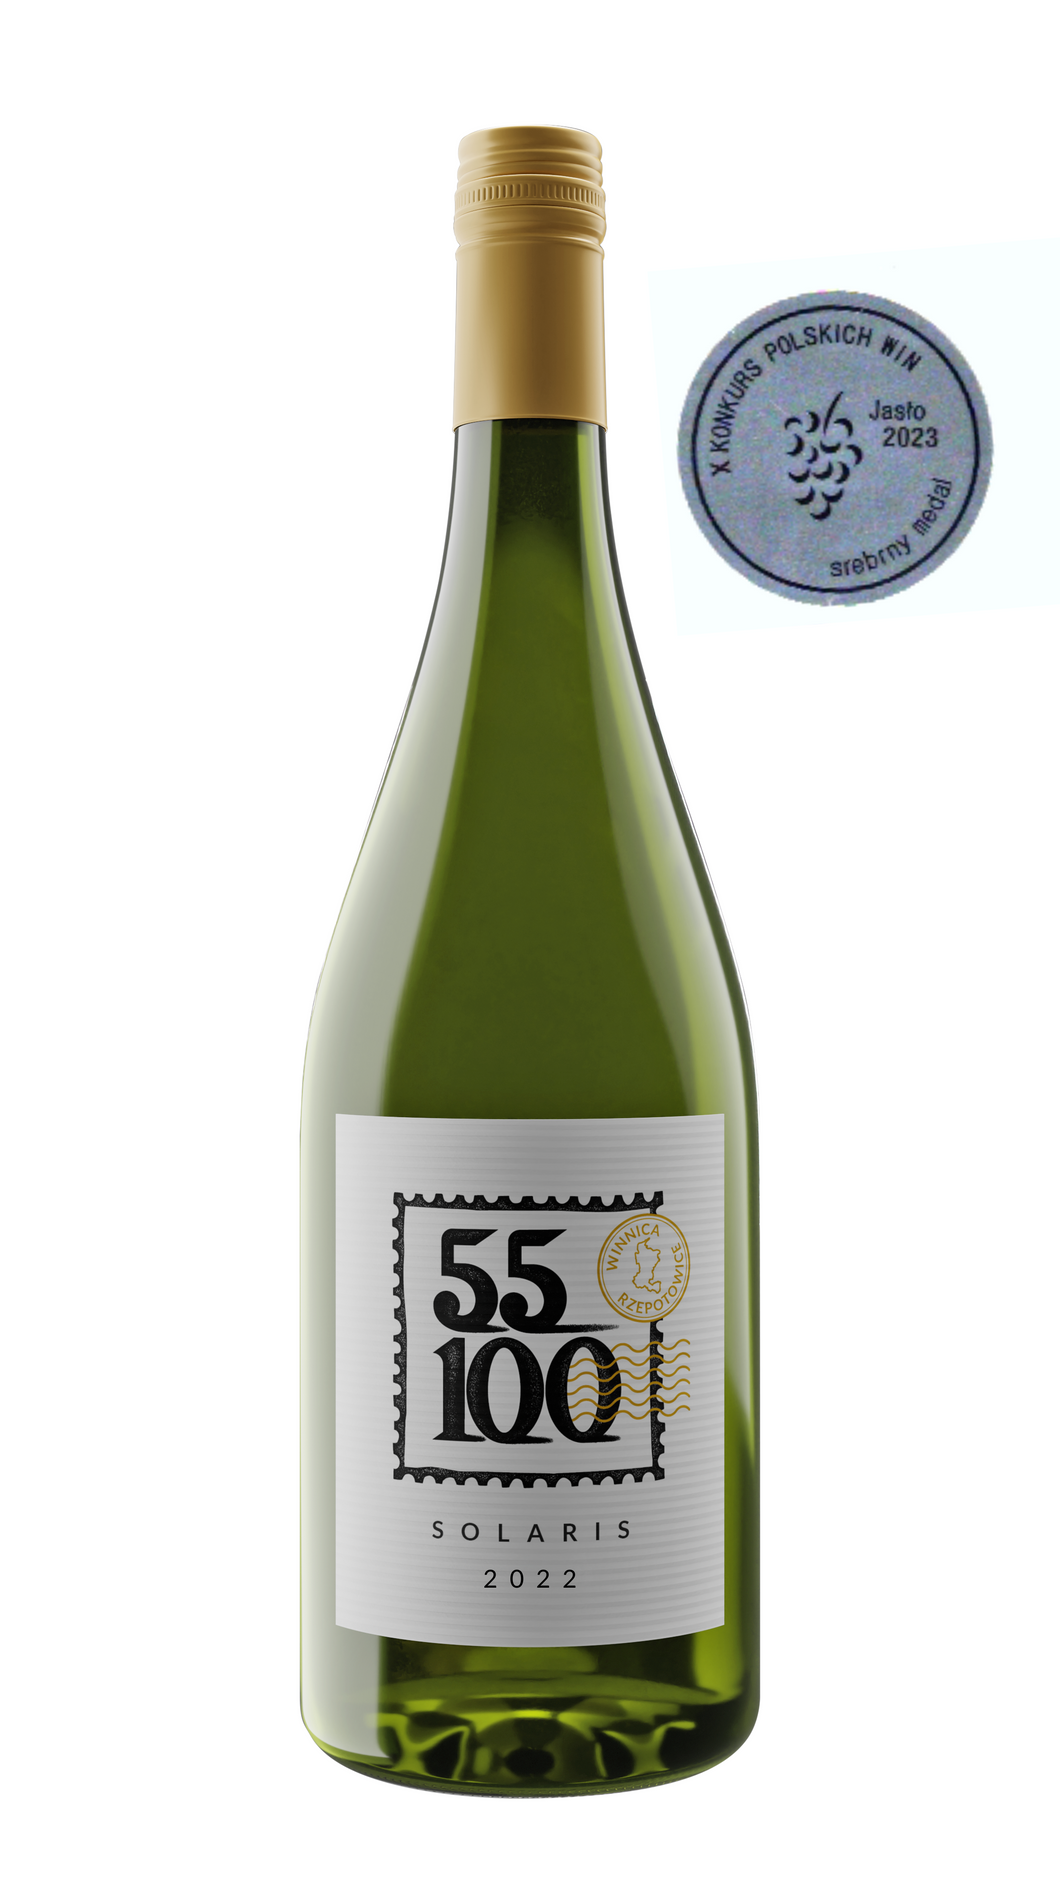 Wino białe wytrawne Solaris 2022